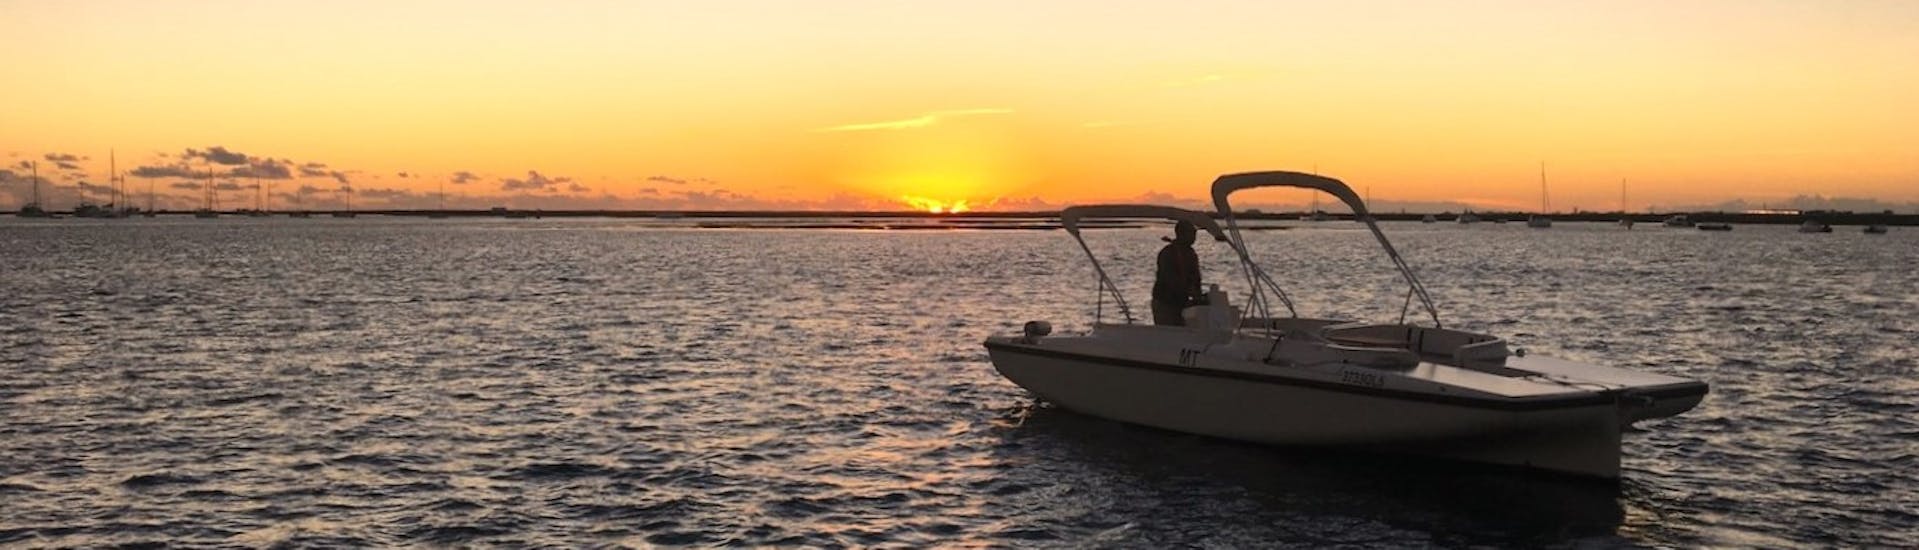 Eine Gruppe von Teilnehmern genießt einen schönen Sonnenuntergang über der Ria Formosa während einer Bootstour bei Sonnenuntergang von Faro aus entlang des Flusses mit Lands Algarve.